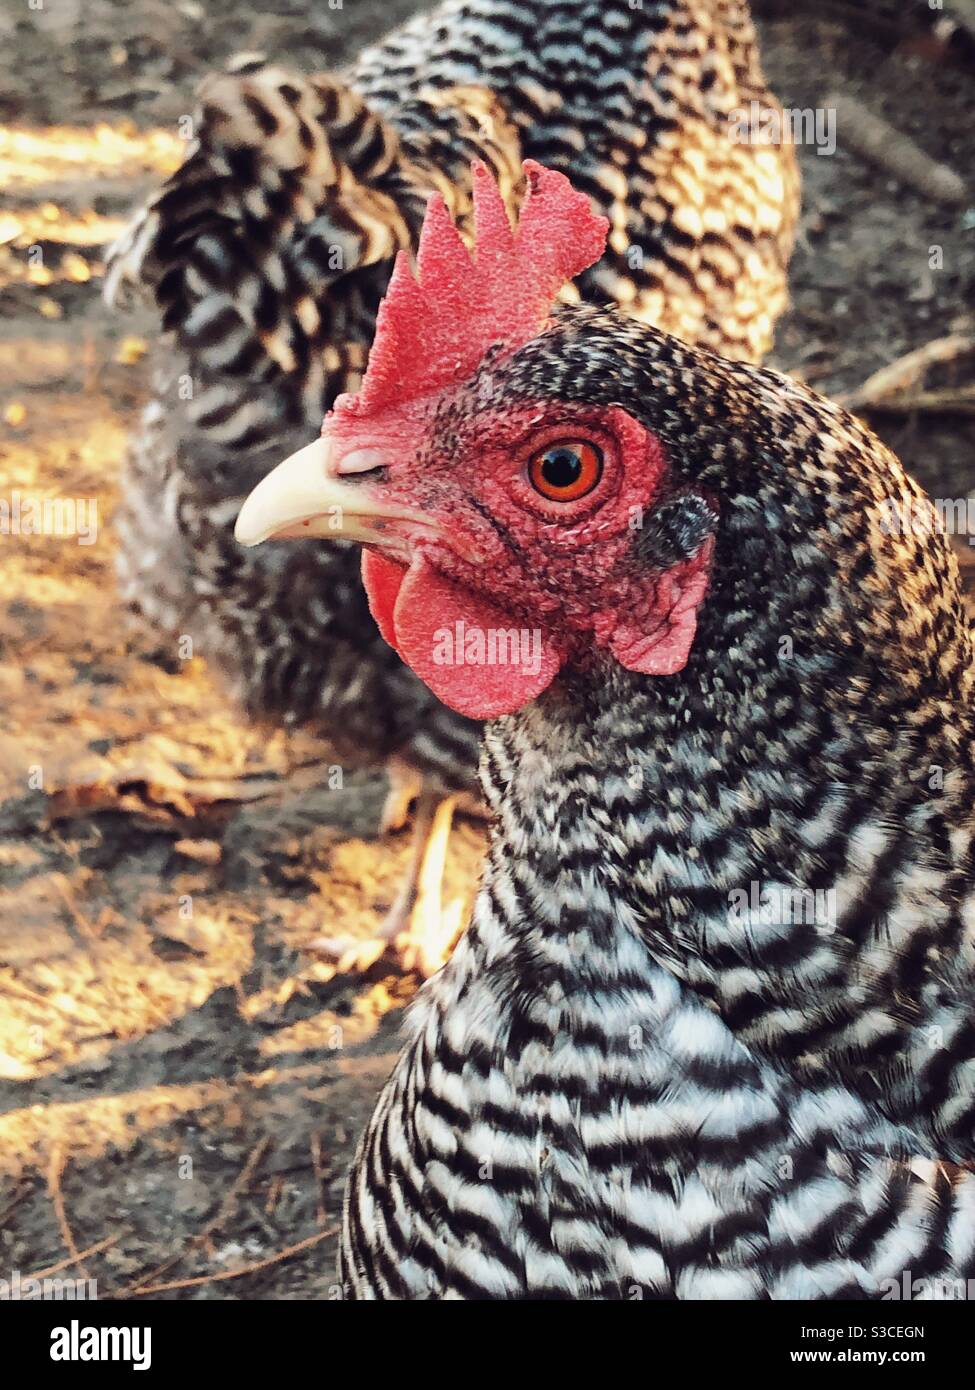 Closeup of Plymouth Rock chicken face Stock Photo